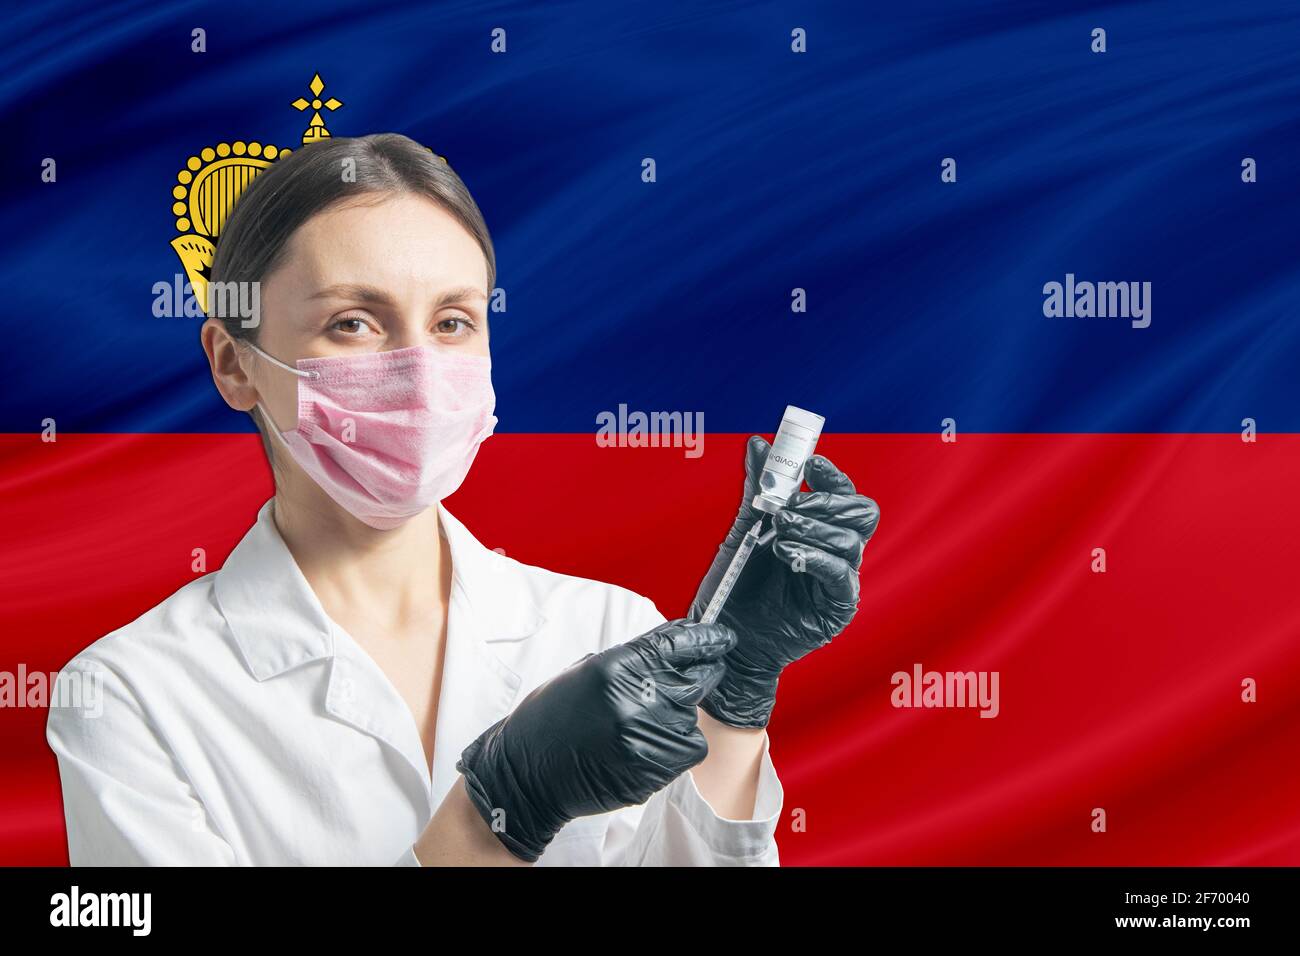 Girl doctor prepares vaccination against the background of the Liechtenstein flag. Vaccination concept Liechtenstein. Stock Photo